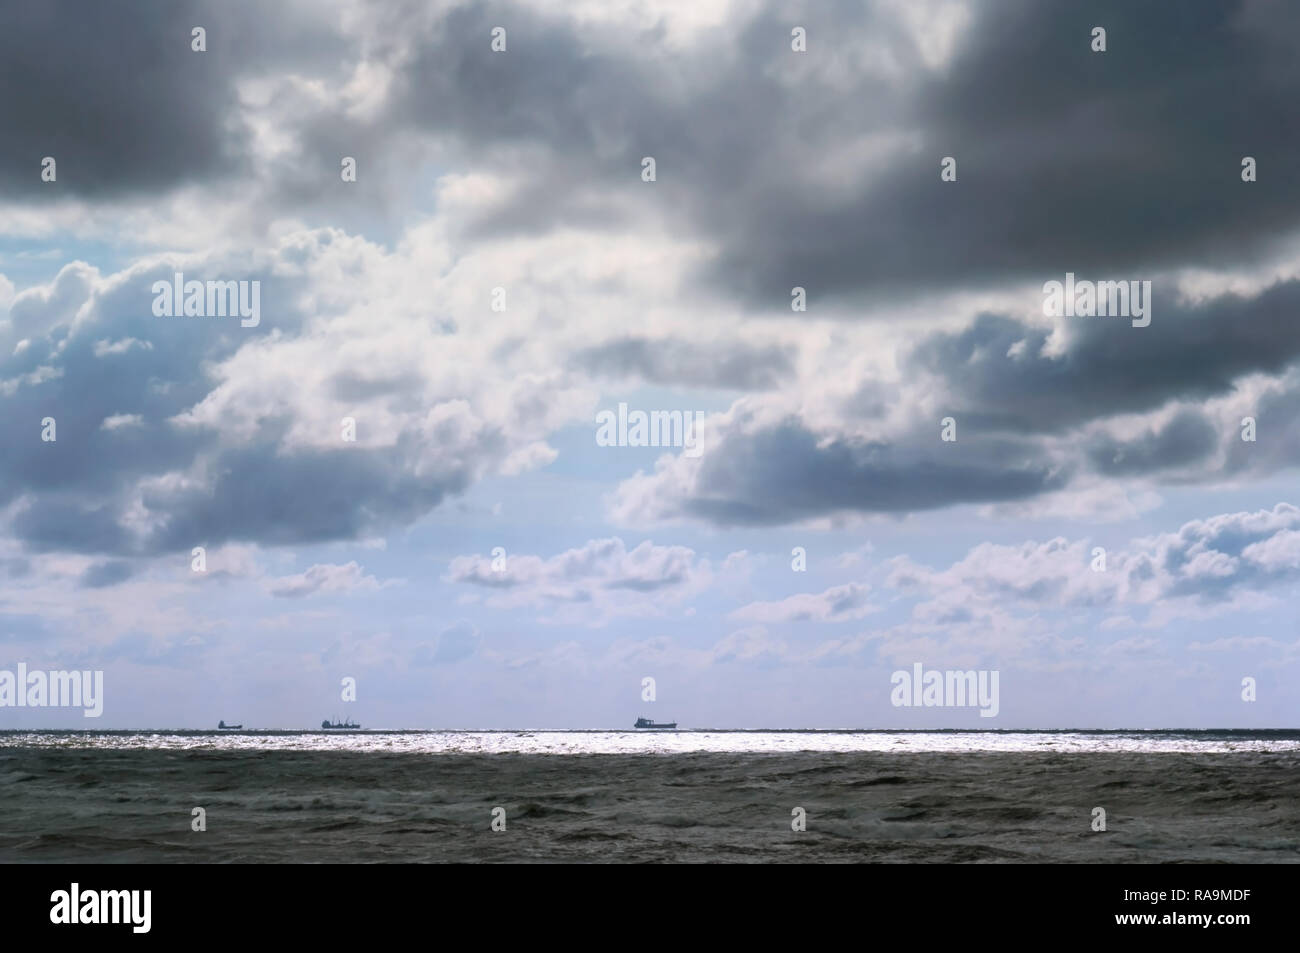 Mer agitée, ciel sombre, les navires à l'horizon Banque D'Images